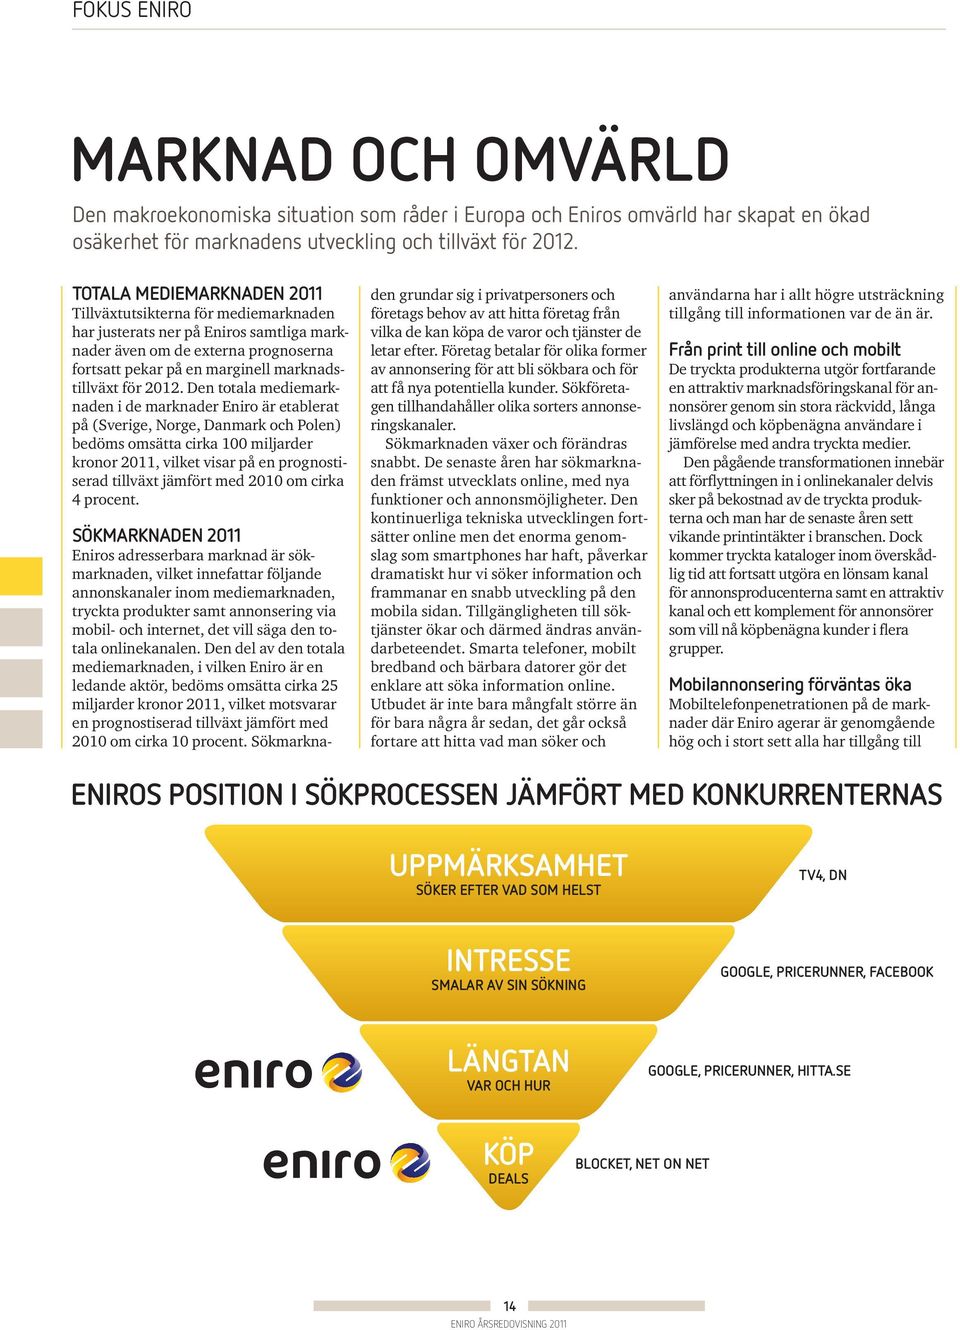 Den totala mediemarknaden i de marknader Eniro är etablerat på (Sverige, Norge, Danmark och Polen) bedöms omsätta cirka 100 miljarder kronor 2011, vilket visar på en prognostiserad tillväxt jämfört